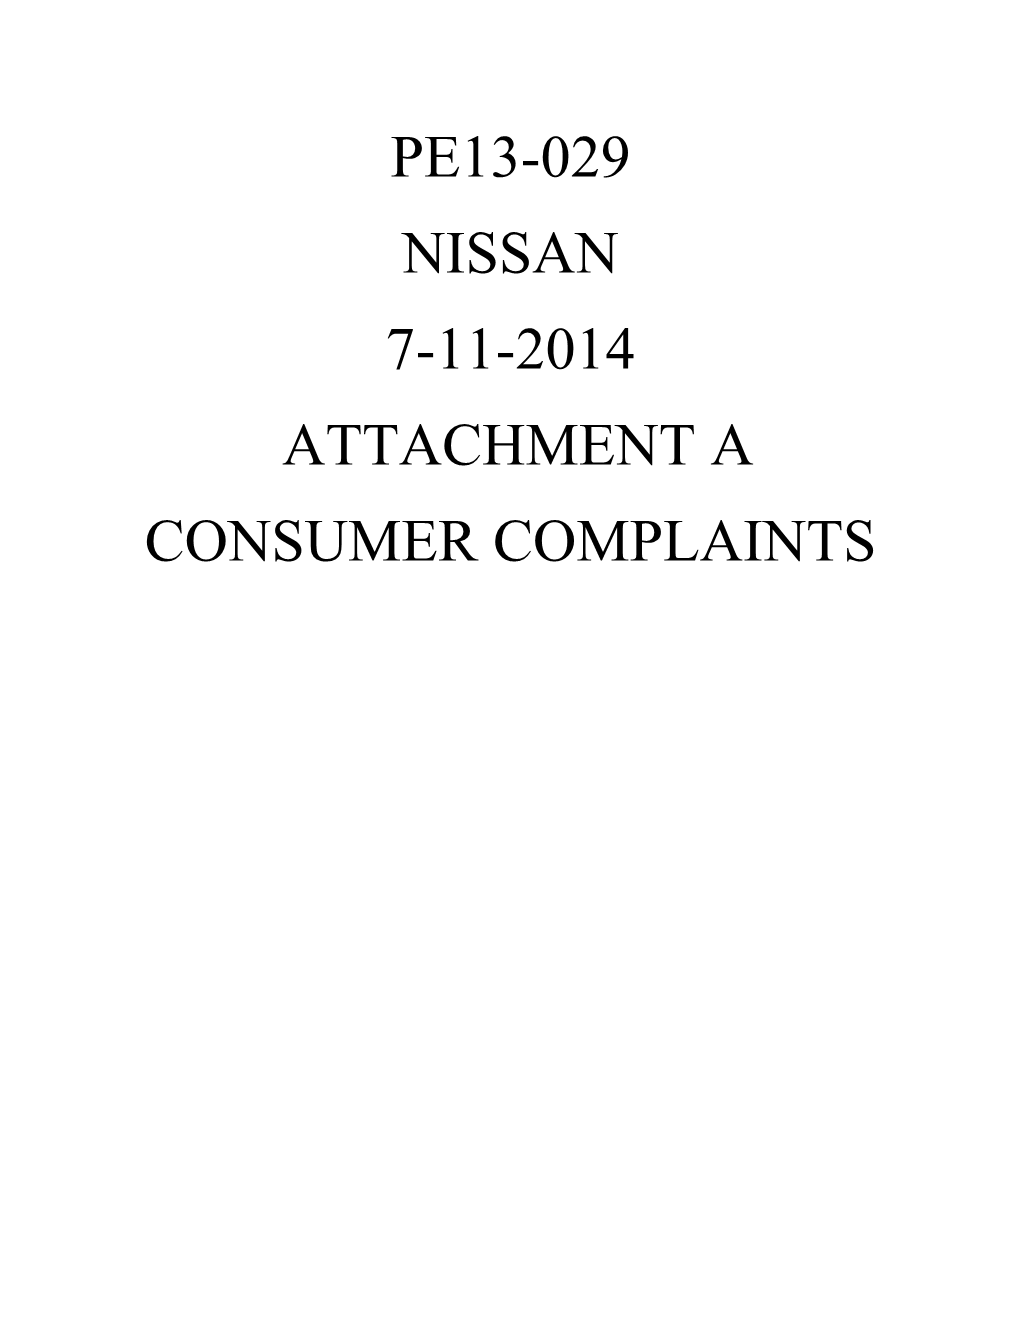 Pe13-029 Nissan 7-11-2014 Attachment a Consumer Complaints